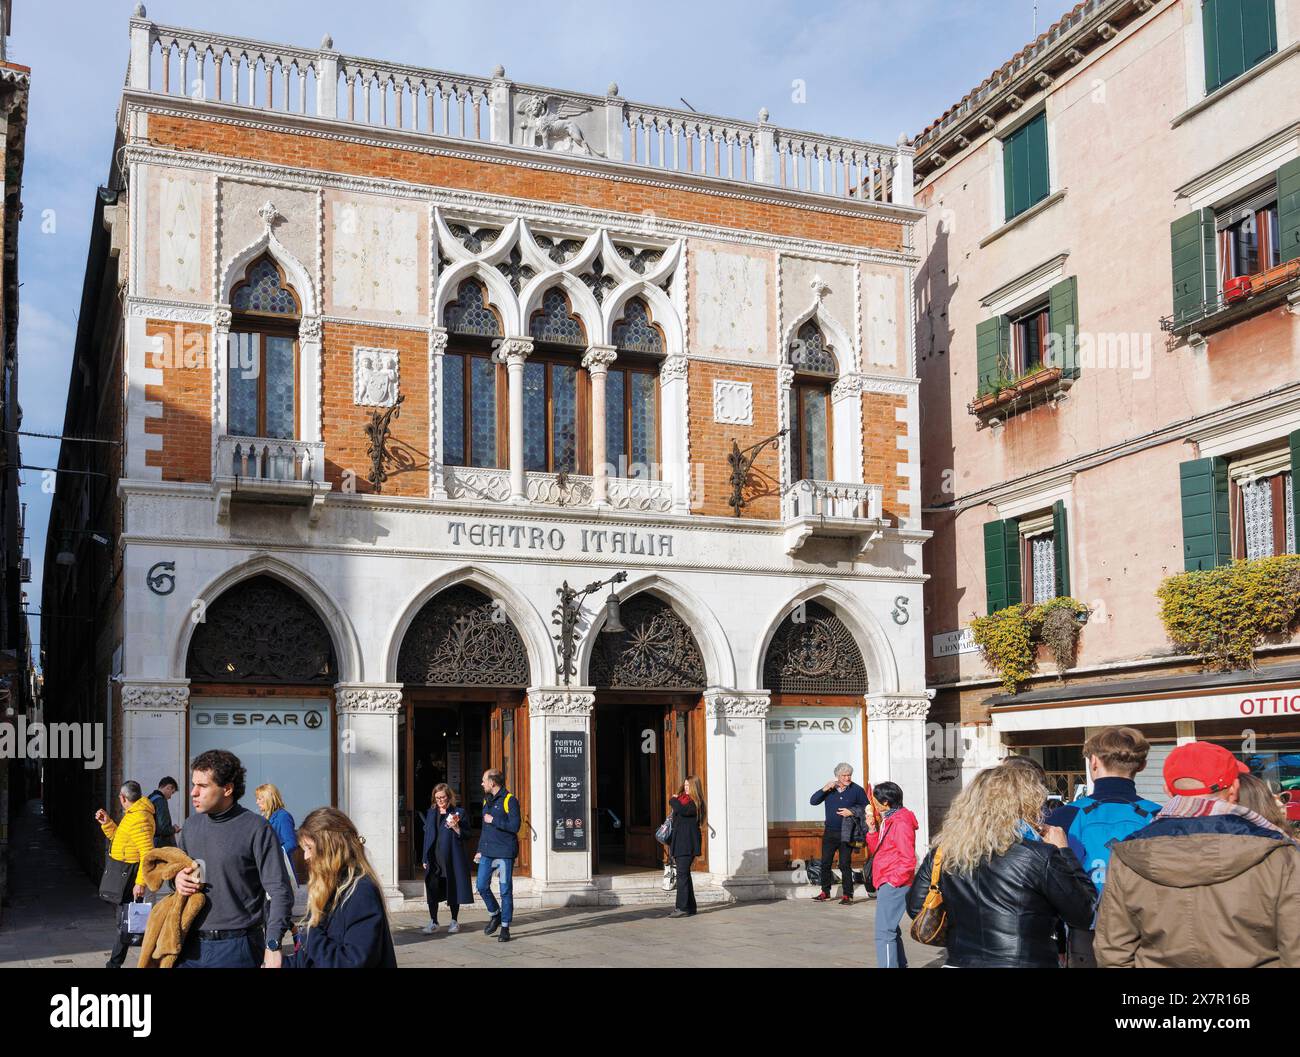 Venise, Province de Venise, région de Vénétie, Italie. Campiello de L'Anconeta et le supermarché Teatro Italia. Venise est classée au patrimoine mondial de l'UNESCO. Banque D'Images